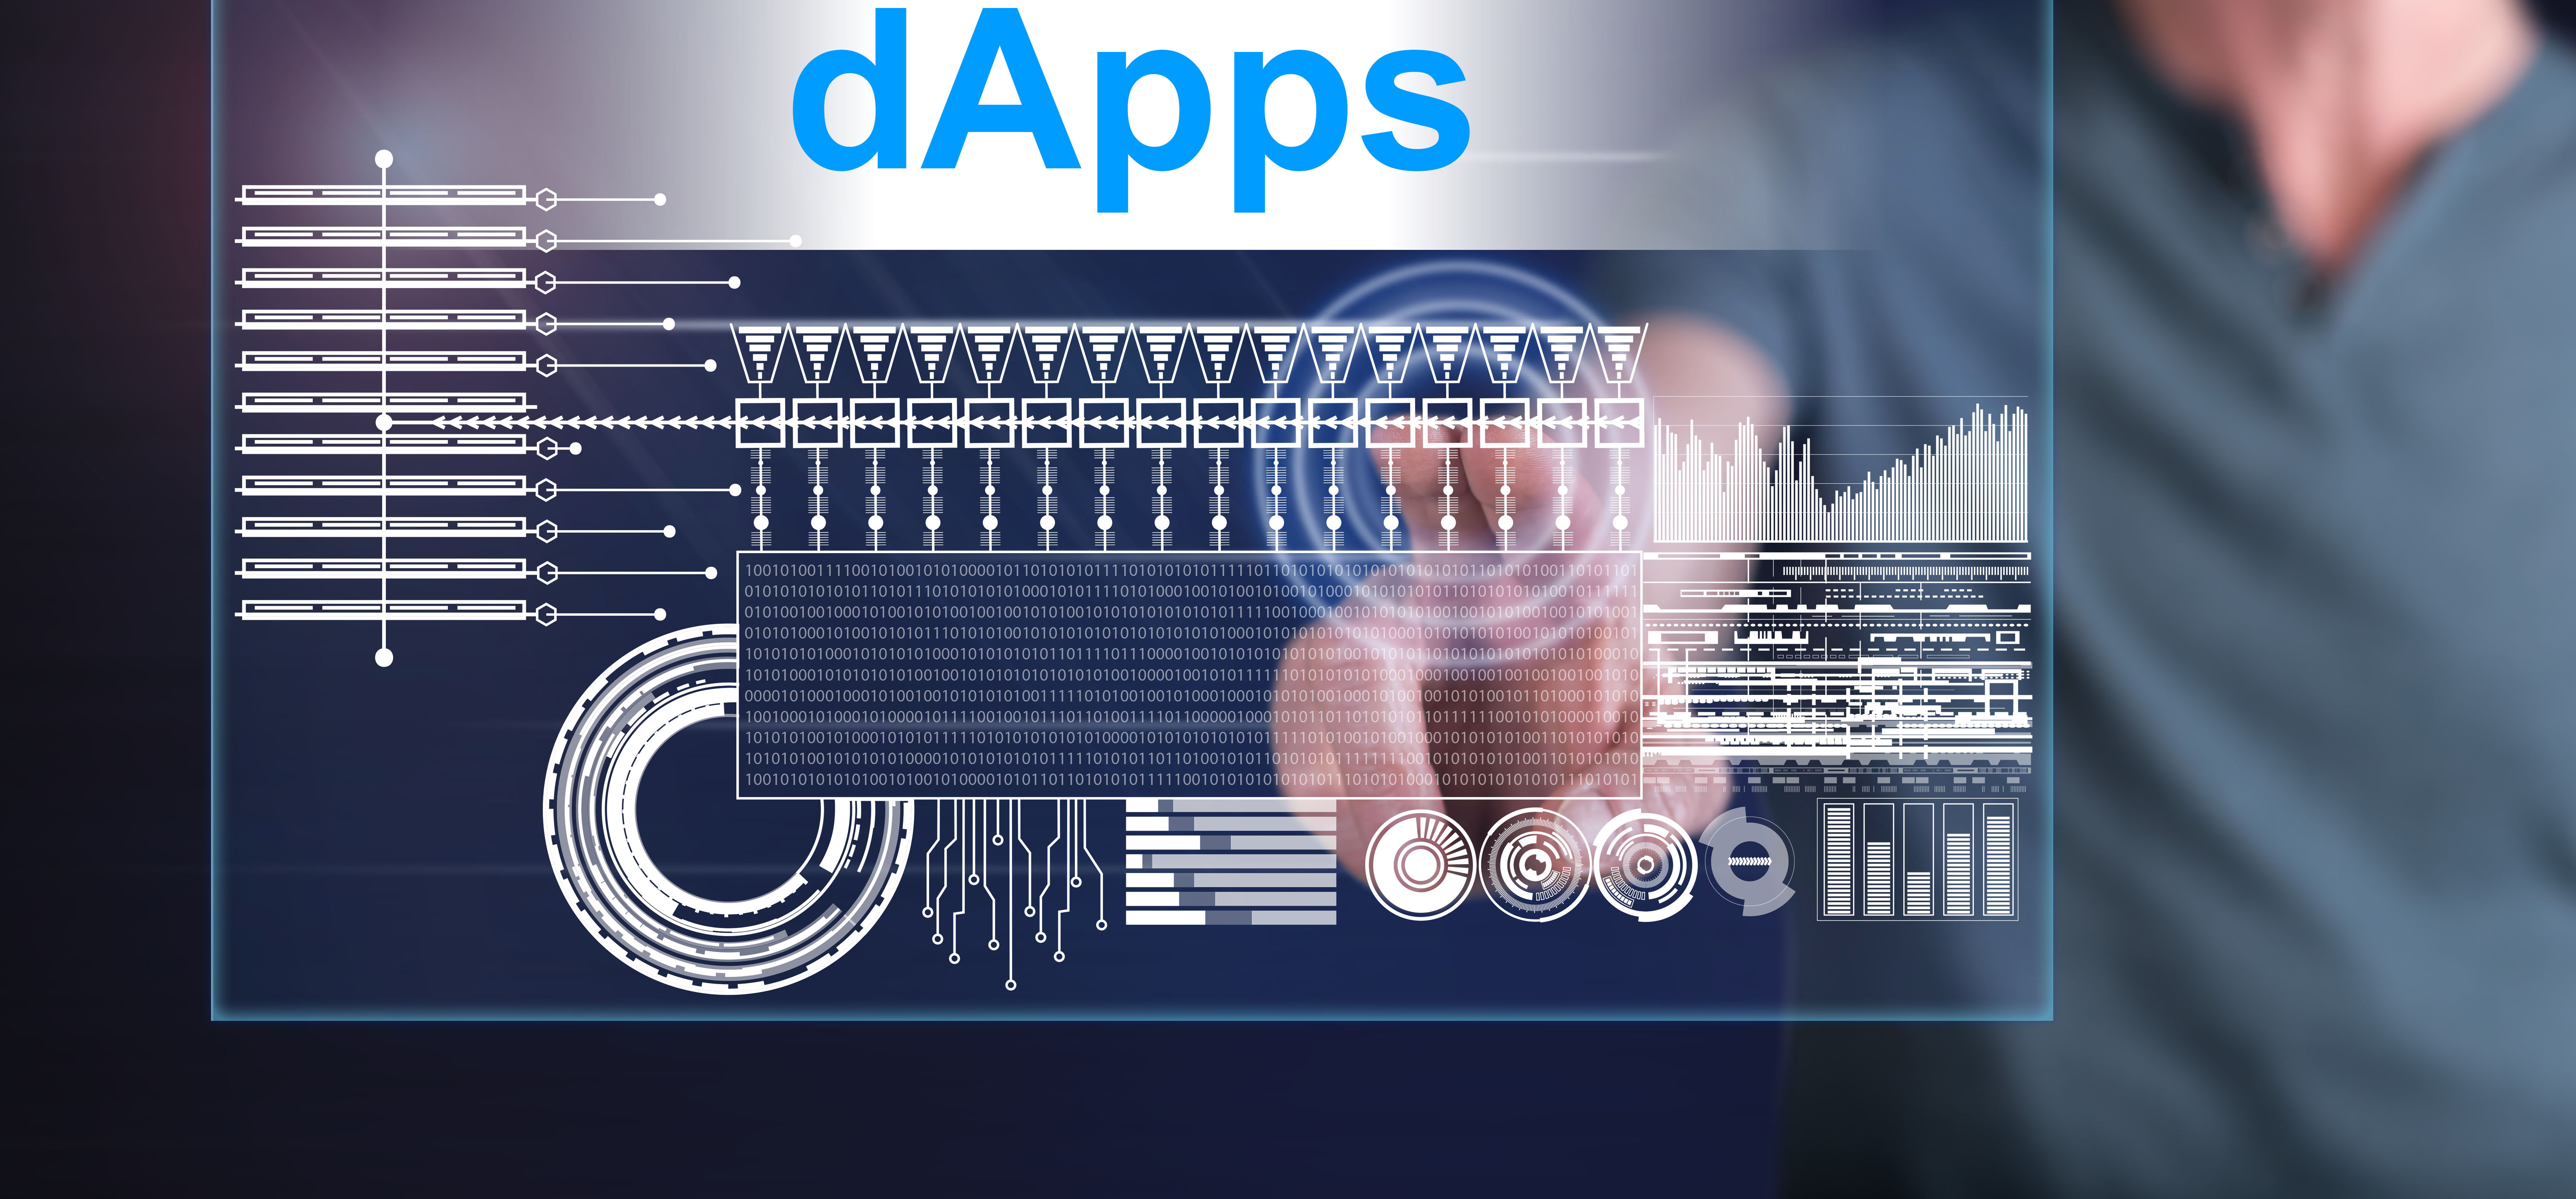 Les applications décentralisées sont aussi appelées DApps. © Thodonal, Adobe Stock